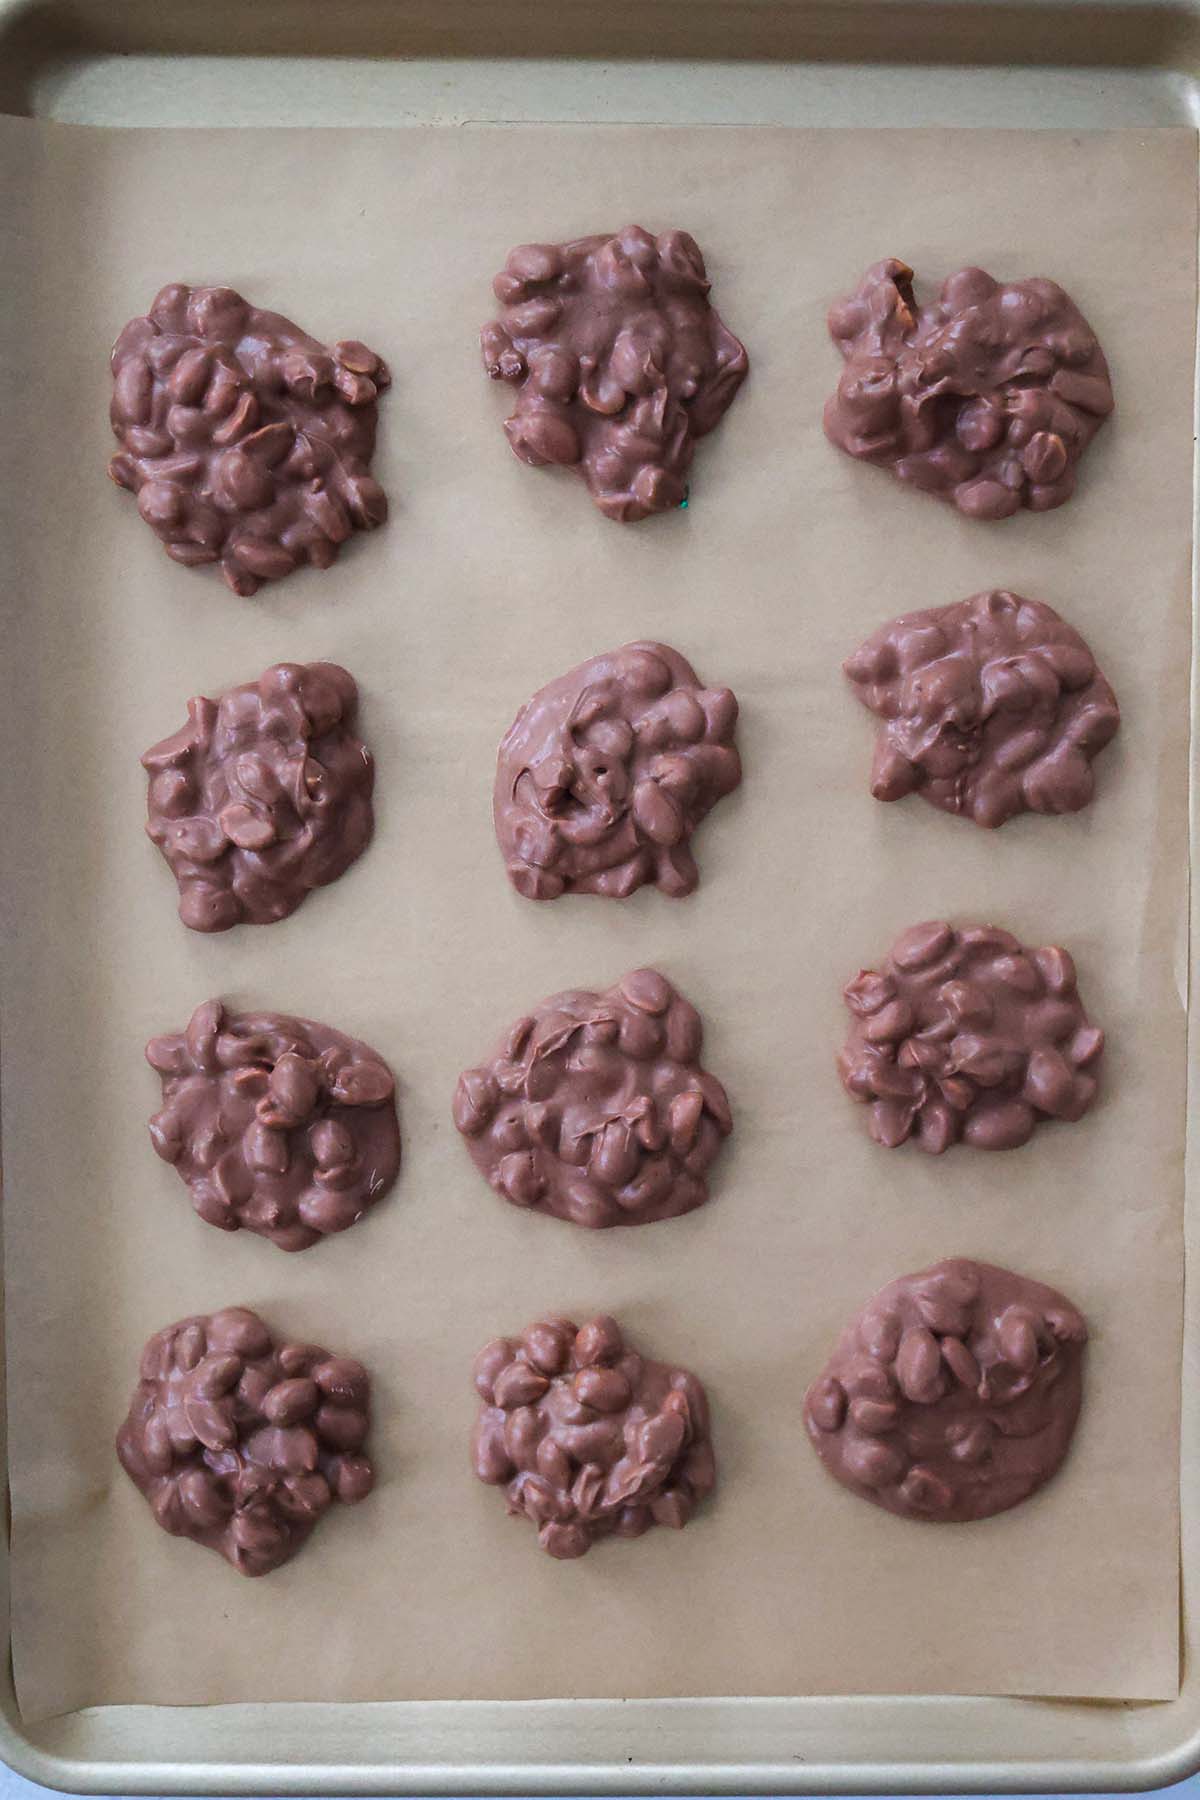 Twelve crockpot candies on a baking sheet. 